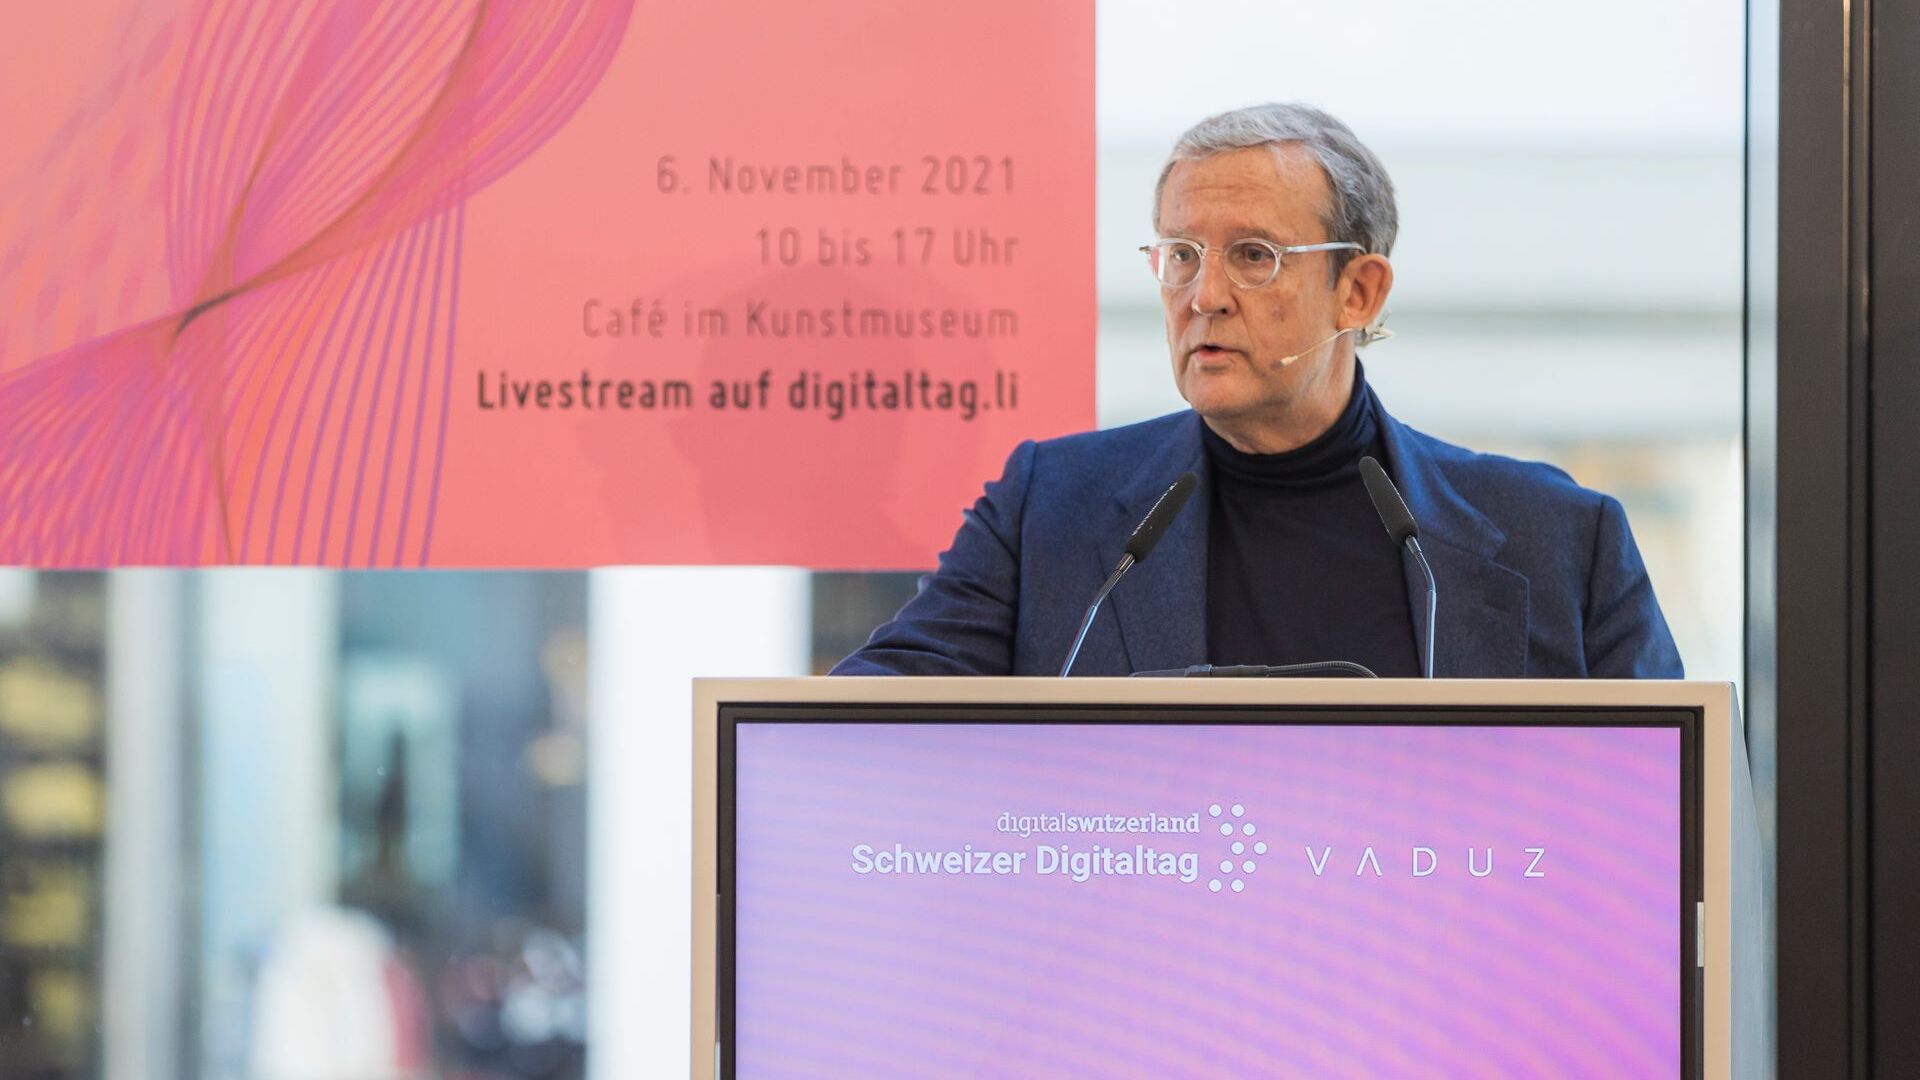 "Digitaltag Vaduz"는 6년 2021월 XNUMX일 토요일 리히텐슈타인 공국의 수도인 Kunstmuseum에서 환영을 받았습니다. Kaiser Partner 회장 겸 소유주인 Fritz Kaiser의 연설